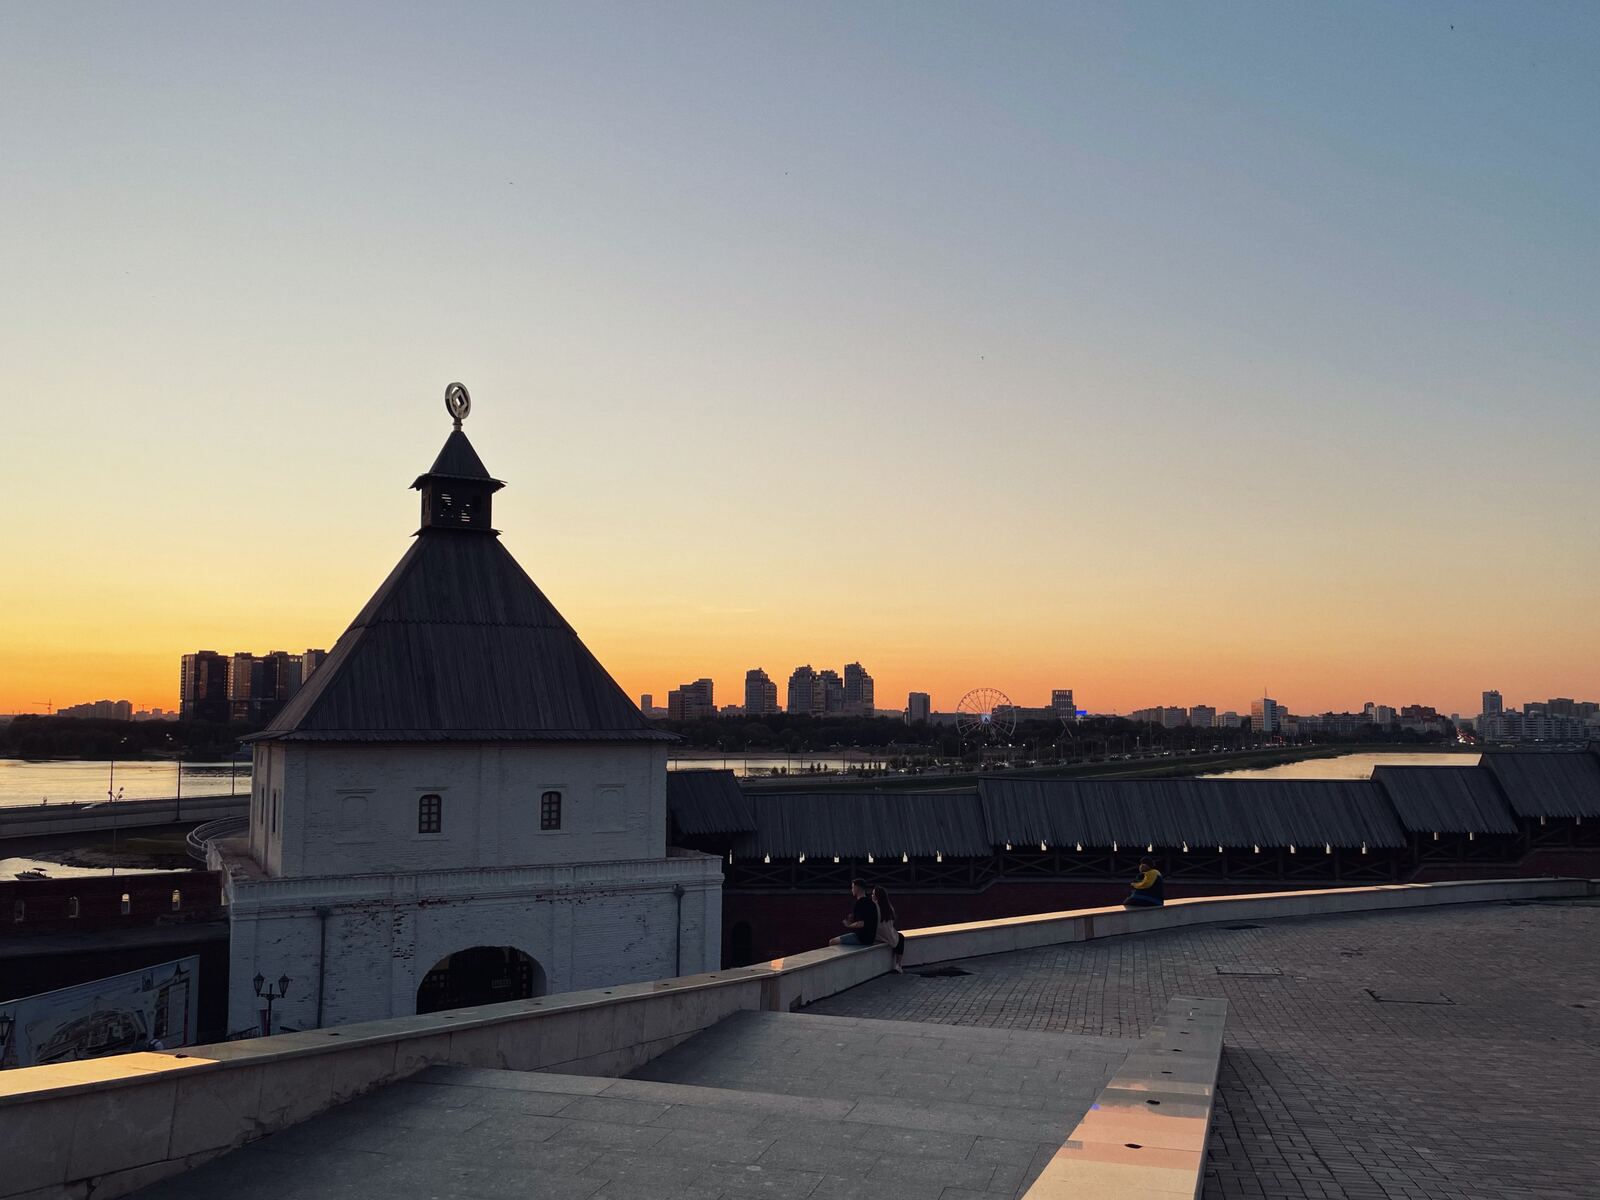 Image of Kazan Kremlin by Team PhotoHound